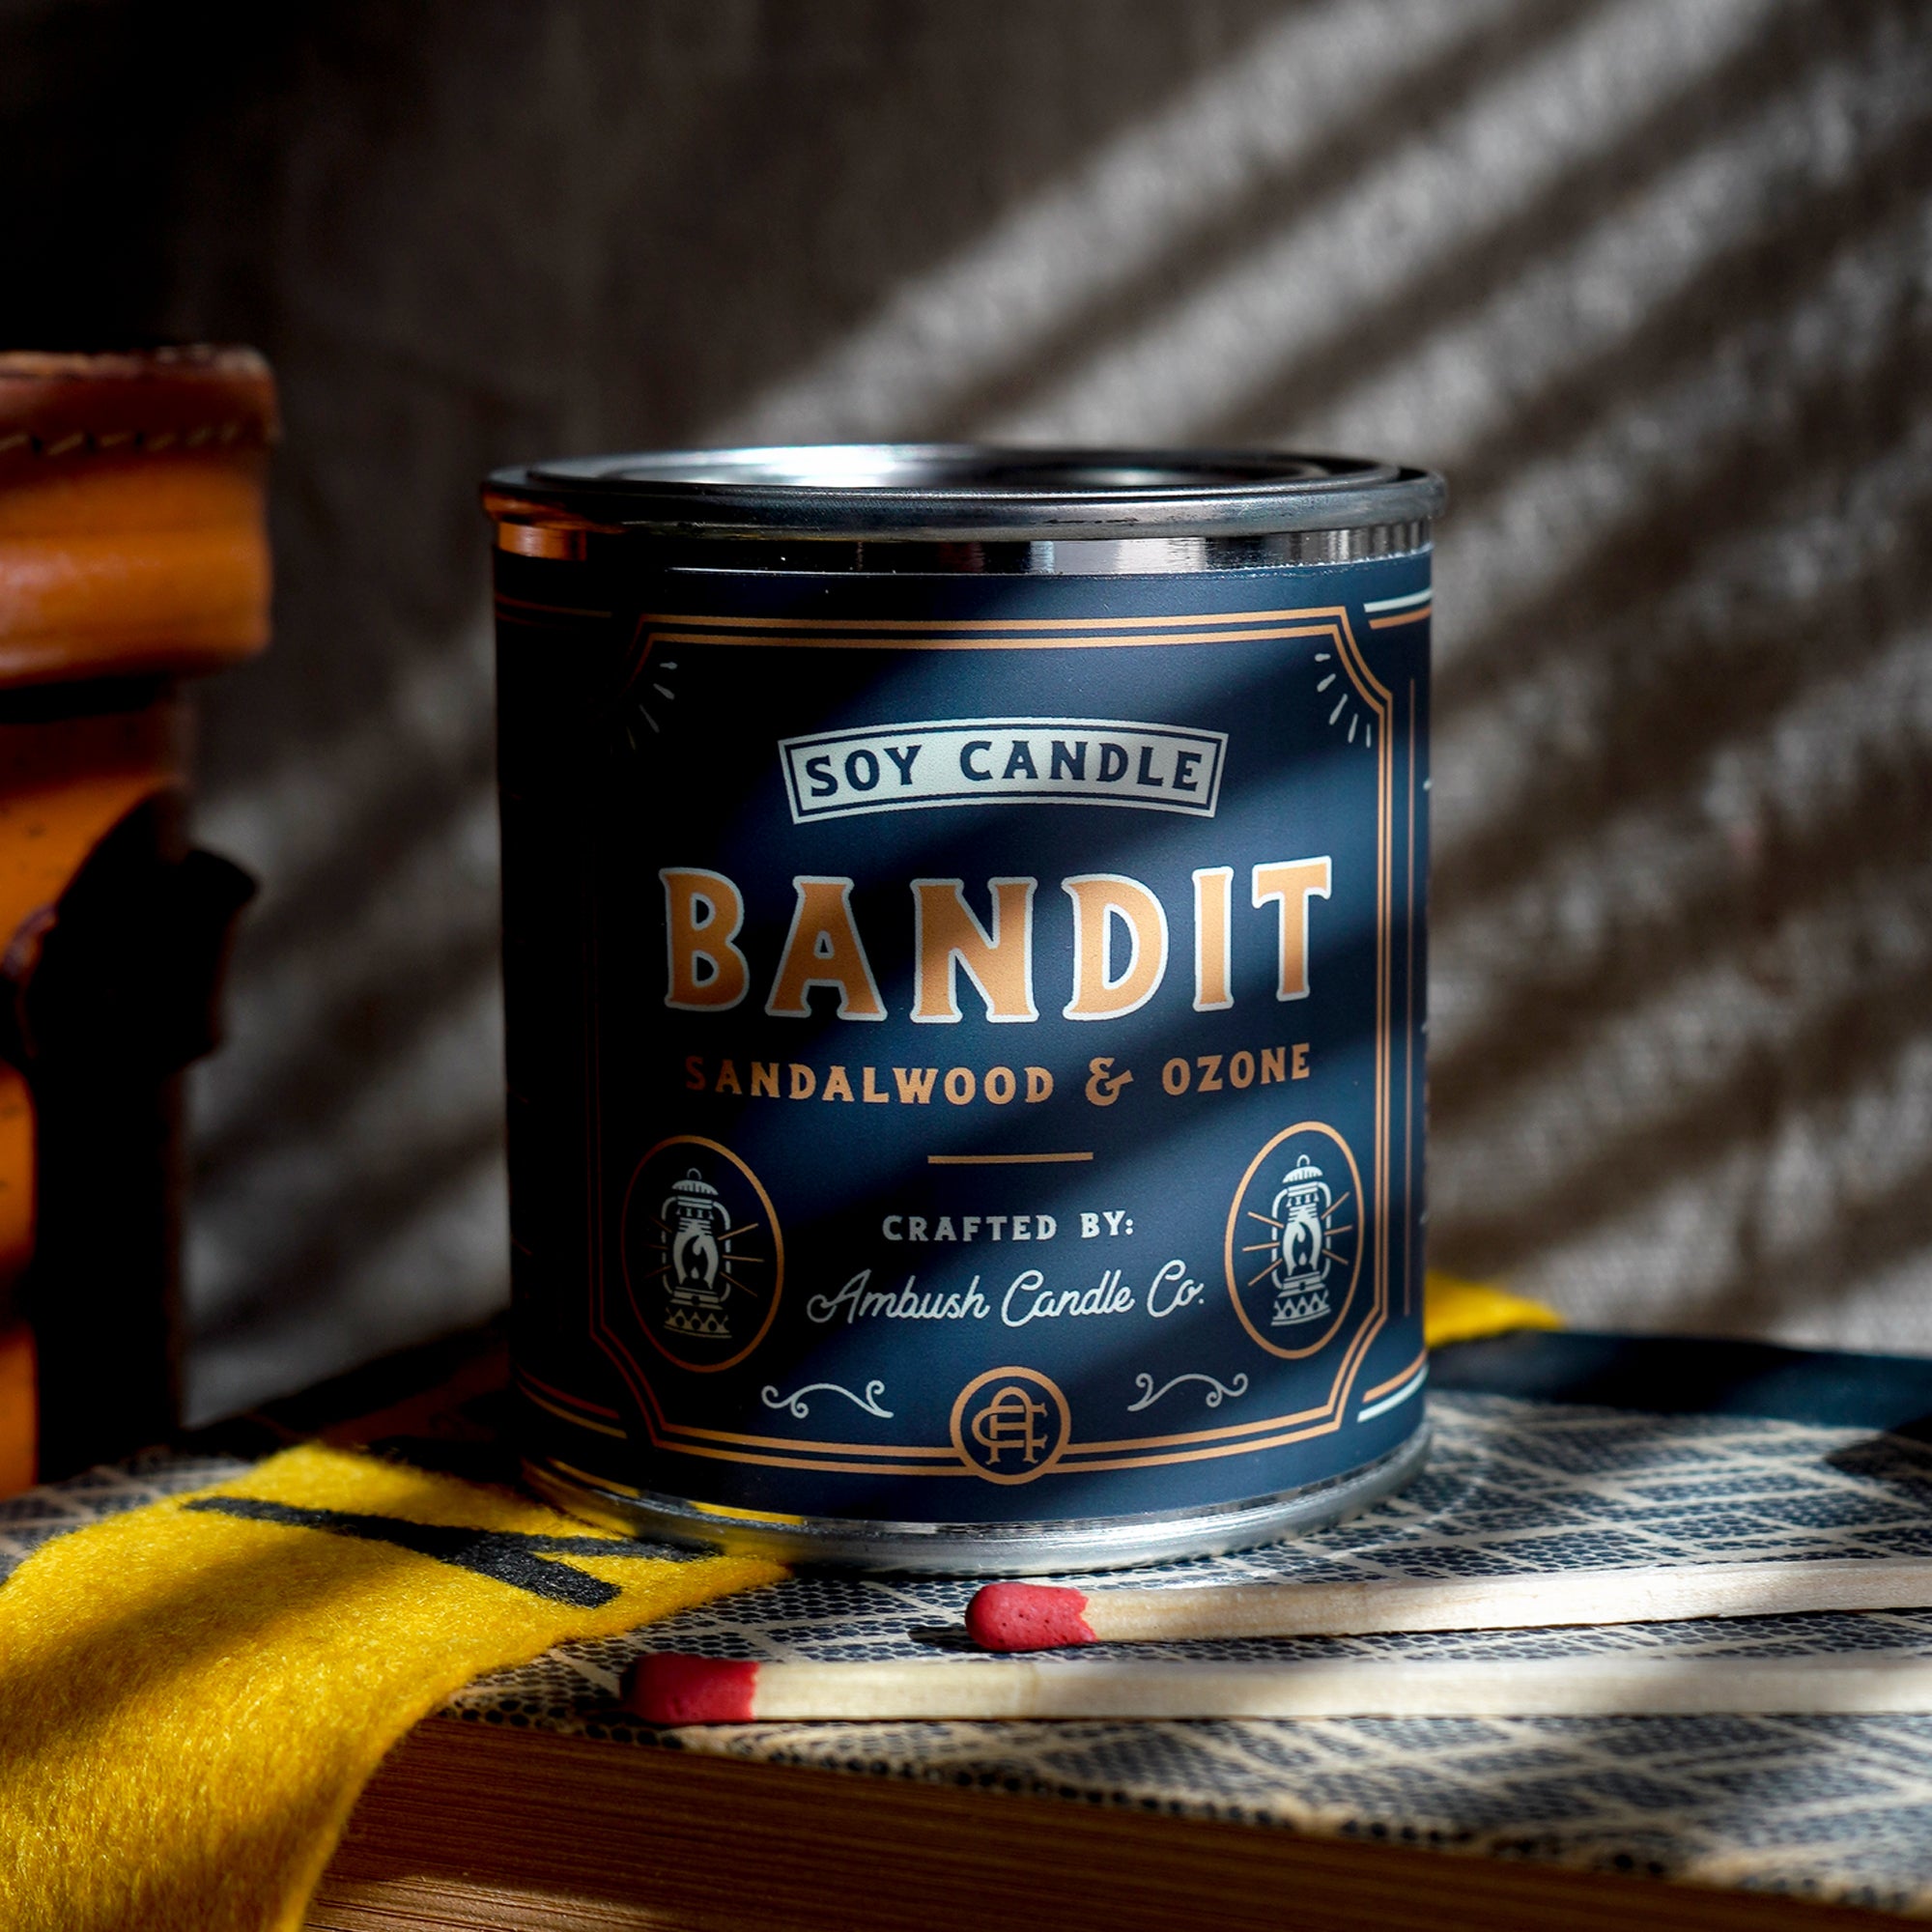 Ambush Candle Co. 8oz 'Bandit' Soy Candle - Sandalwood / Ozone